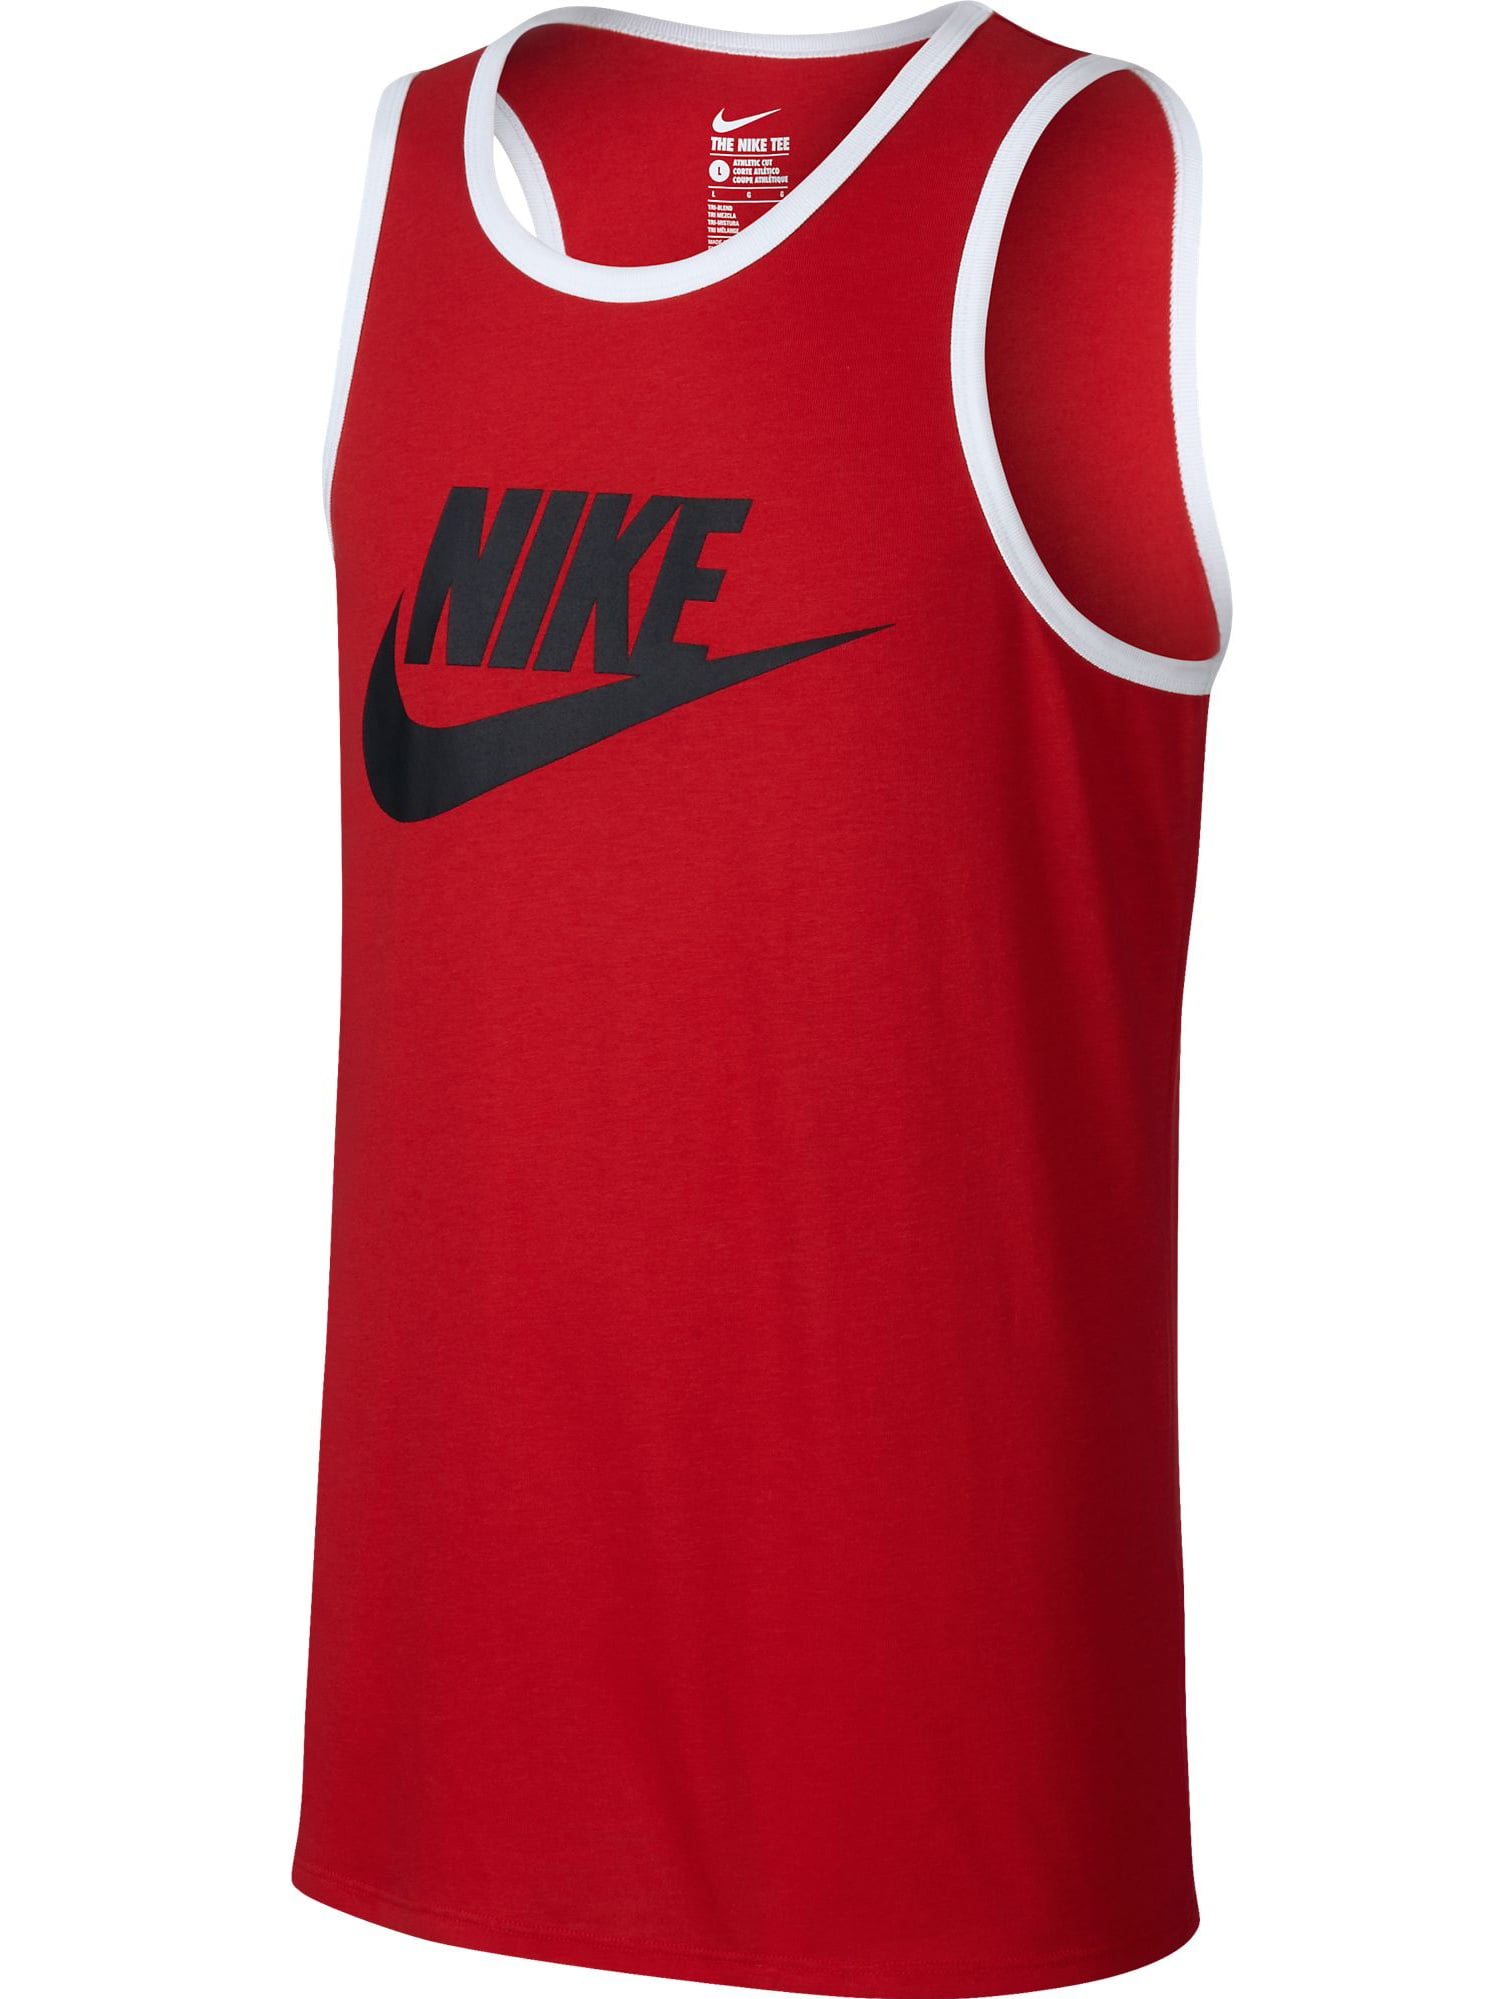 スマートフォン/携帯電話 スマートフォン本体 Nike ACE Logo Men's Tank Top Athletic Red/White/Black 779234-657